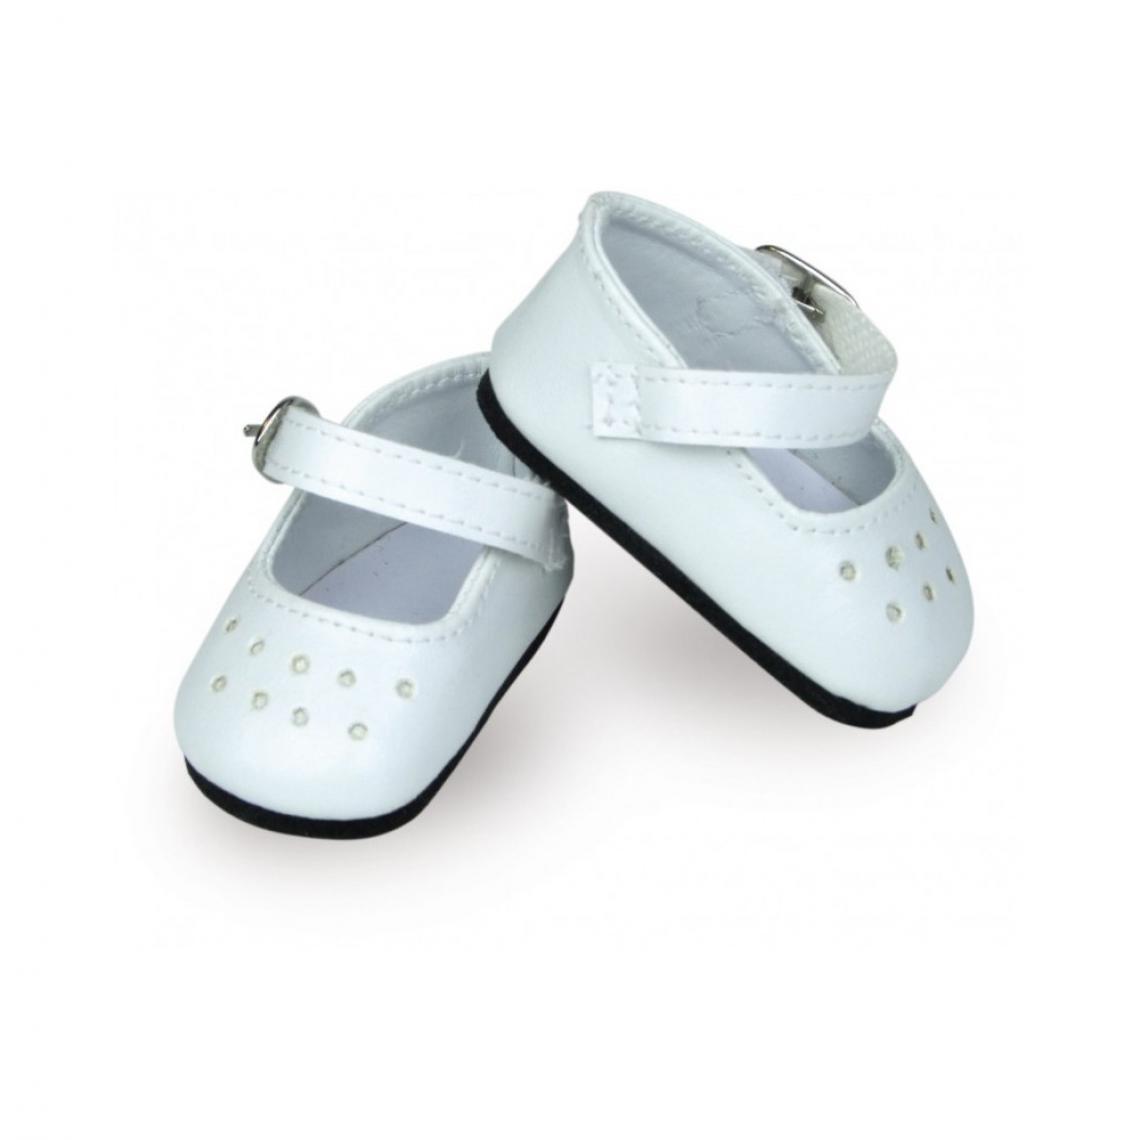 Vilac - Chaussures de sport grise-pois blancs pour Minouche T.34cm - Vilac - Jeux et jouets - Cuisine et ménage